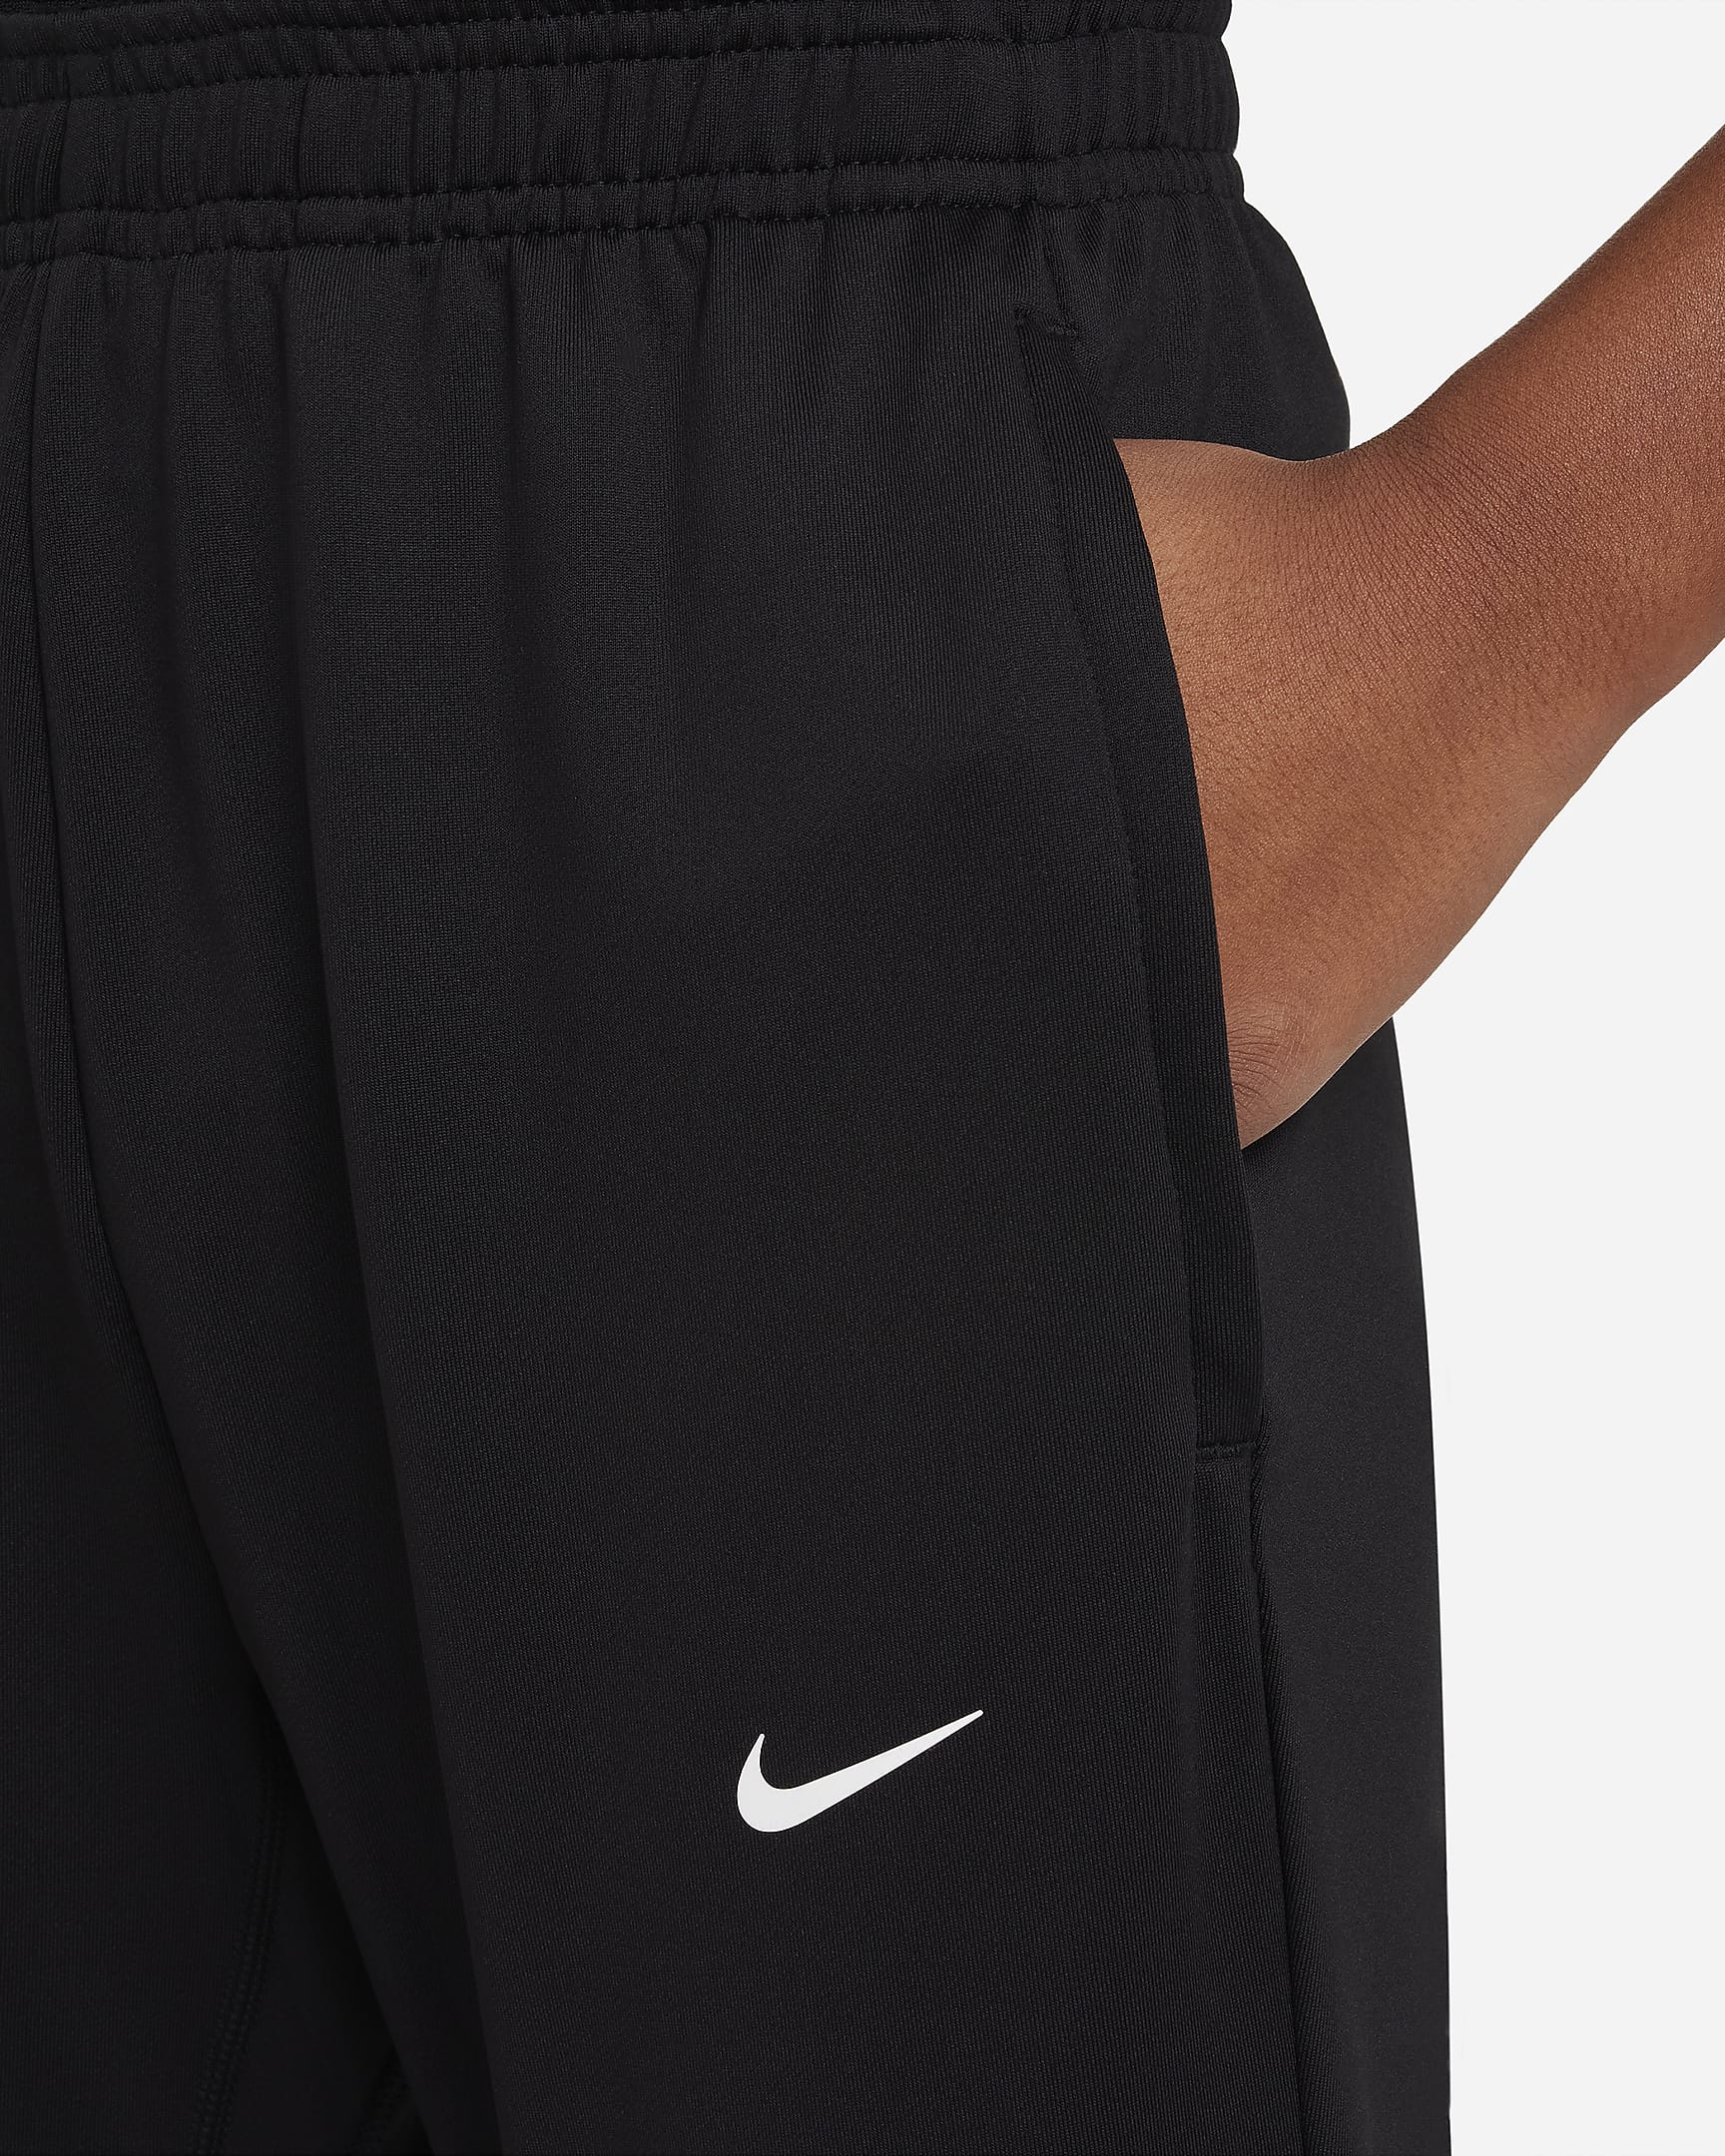 Pantaloni da calcio Nike Dri-FIT Strike – Ragazzi - Nero/Nero/Antracite/Bianco